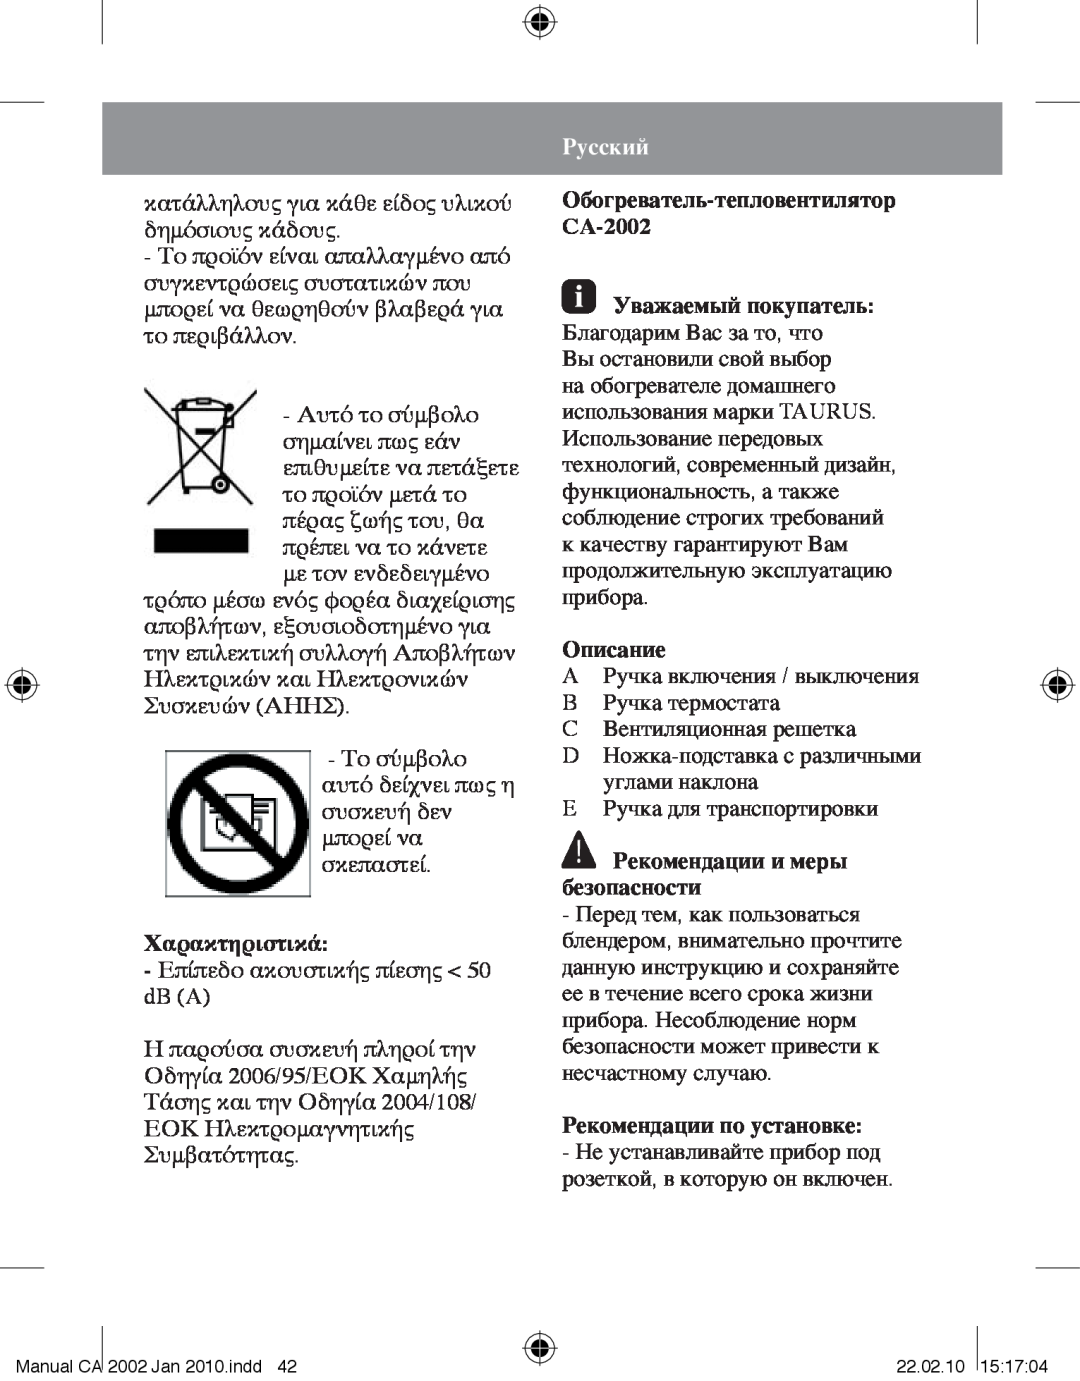 Taurus Group CA-2002 manual Χαρακτηριστικά, Русский, Описание, Рекомендации и меры безопасности, Рекомендации по установке 